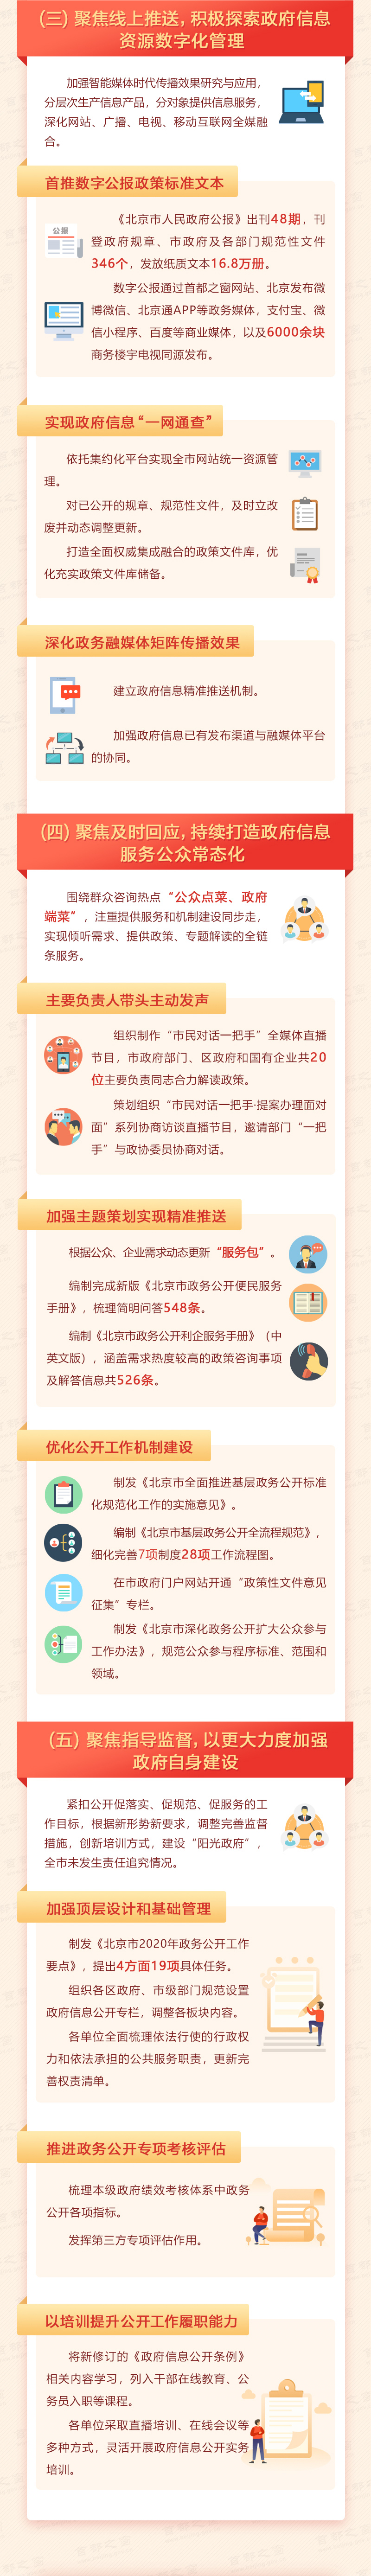 2020年北京市政府信息公開工作年度報告解讀